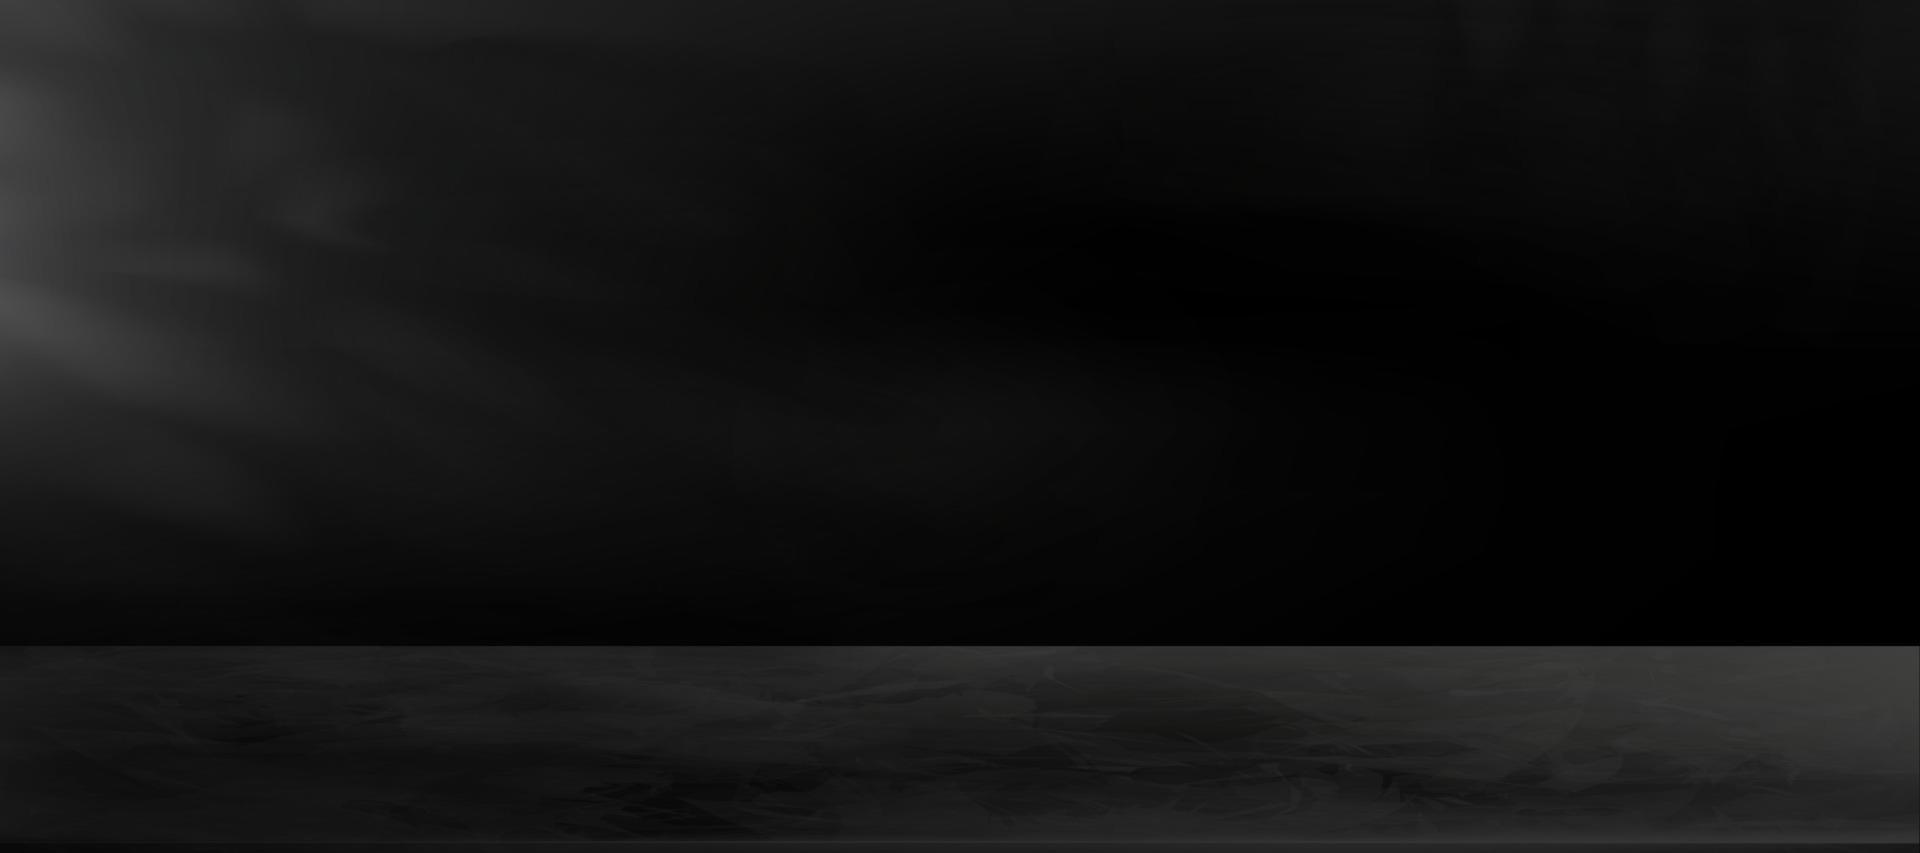 sala de exhibición de cemento de pared, fondo de textura de marbele negro de estudio 3d vectorial, telón de fondo de maqueta de horizonte, sala de galería vacía en hormigón oscuro con sombra de hojas y luz.diseño panorámico amplio de banner vector